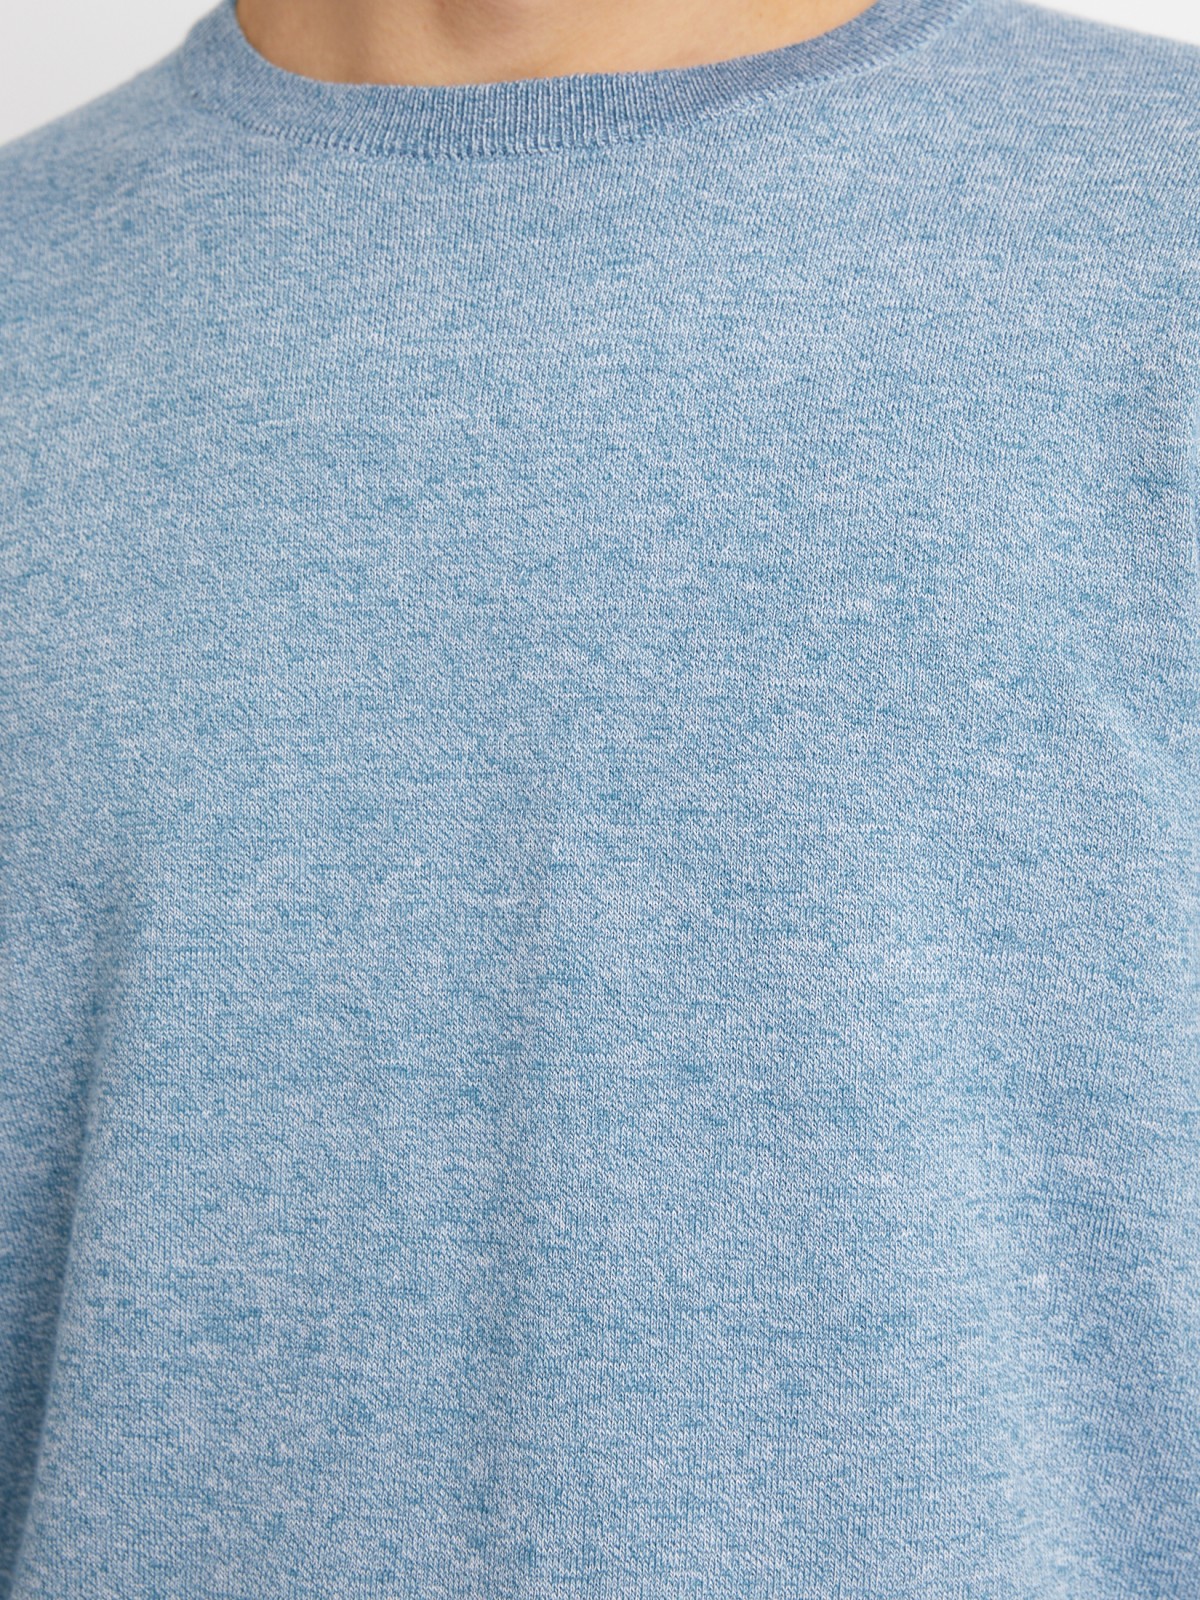 Тонкий трикотажный джемпер с длинным рукавом zolla 014116101162, цвет светло-голубой, размер M - фото 4